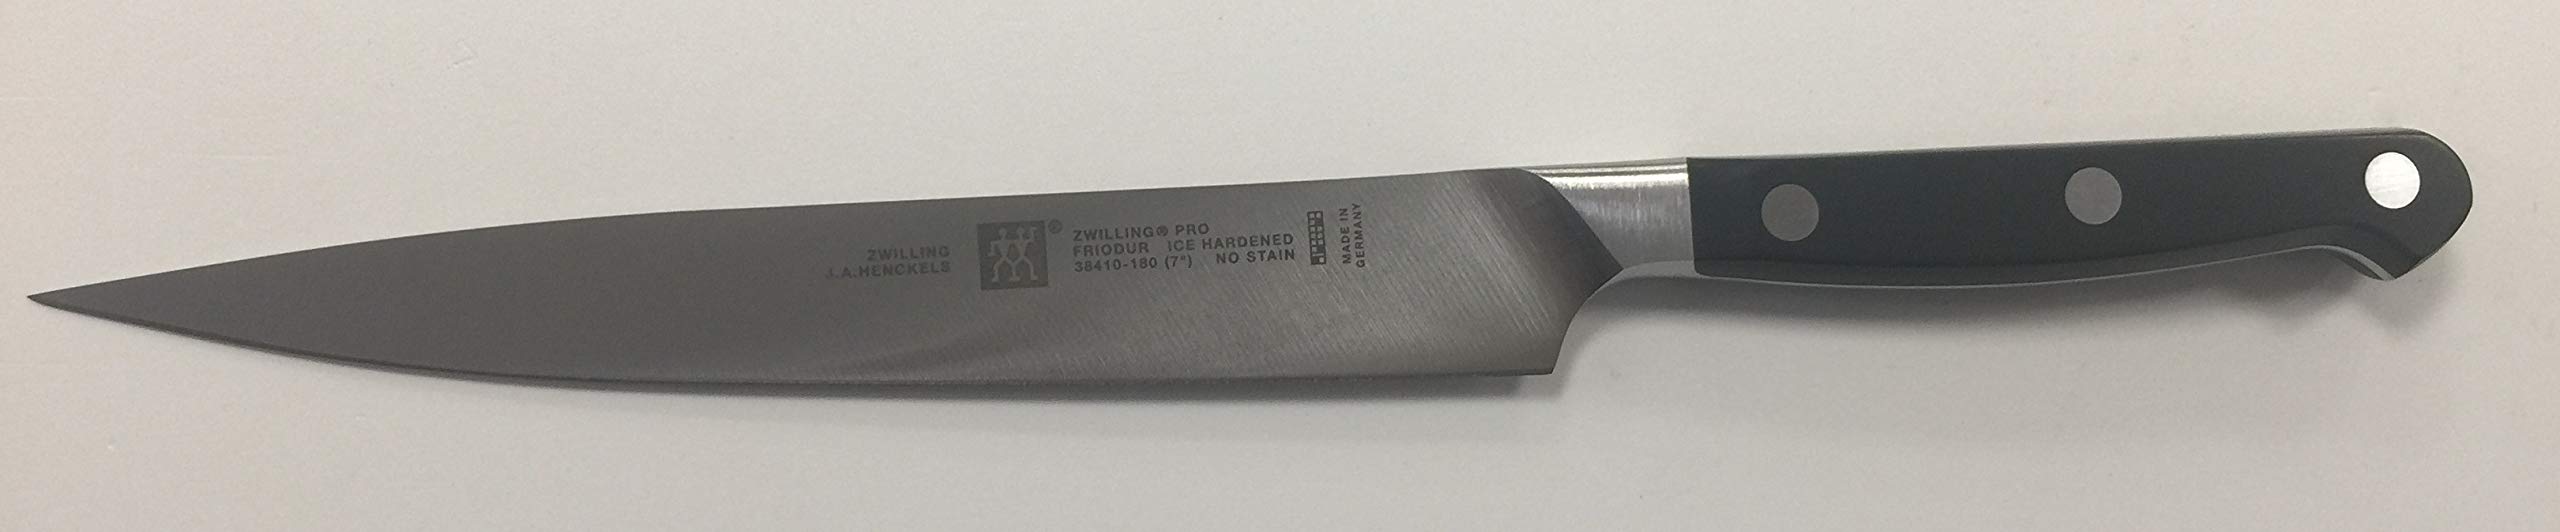 Zwilling 38410-181-0 Pro Filiermesser - Stahl/Kunststoff - Klingenlänge: 180 mm